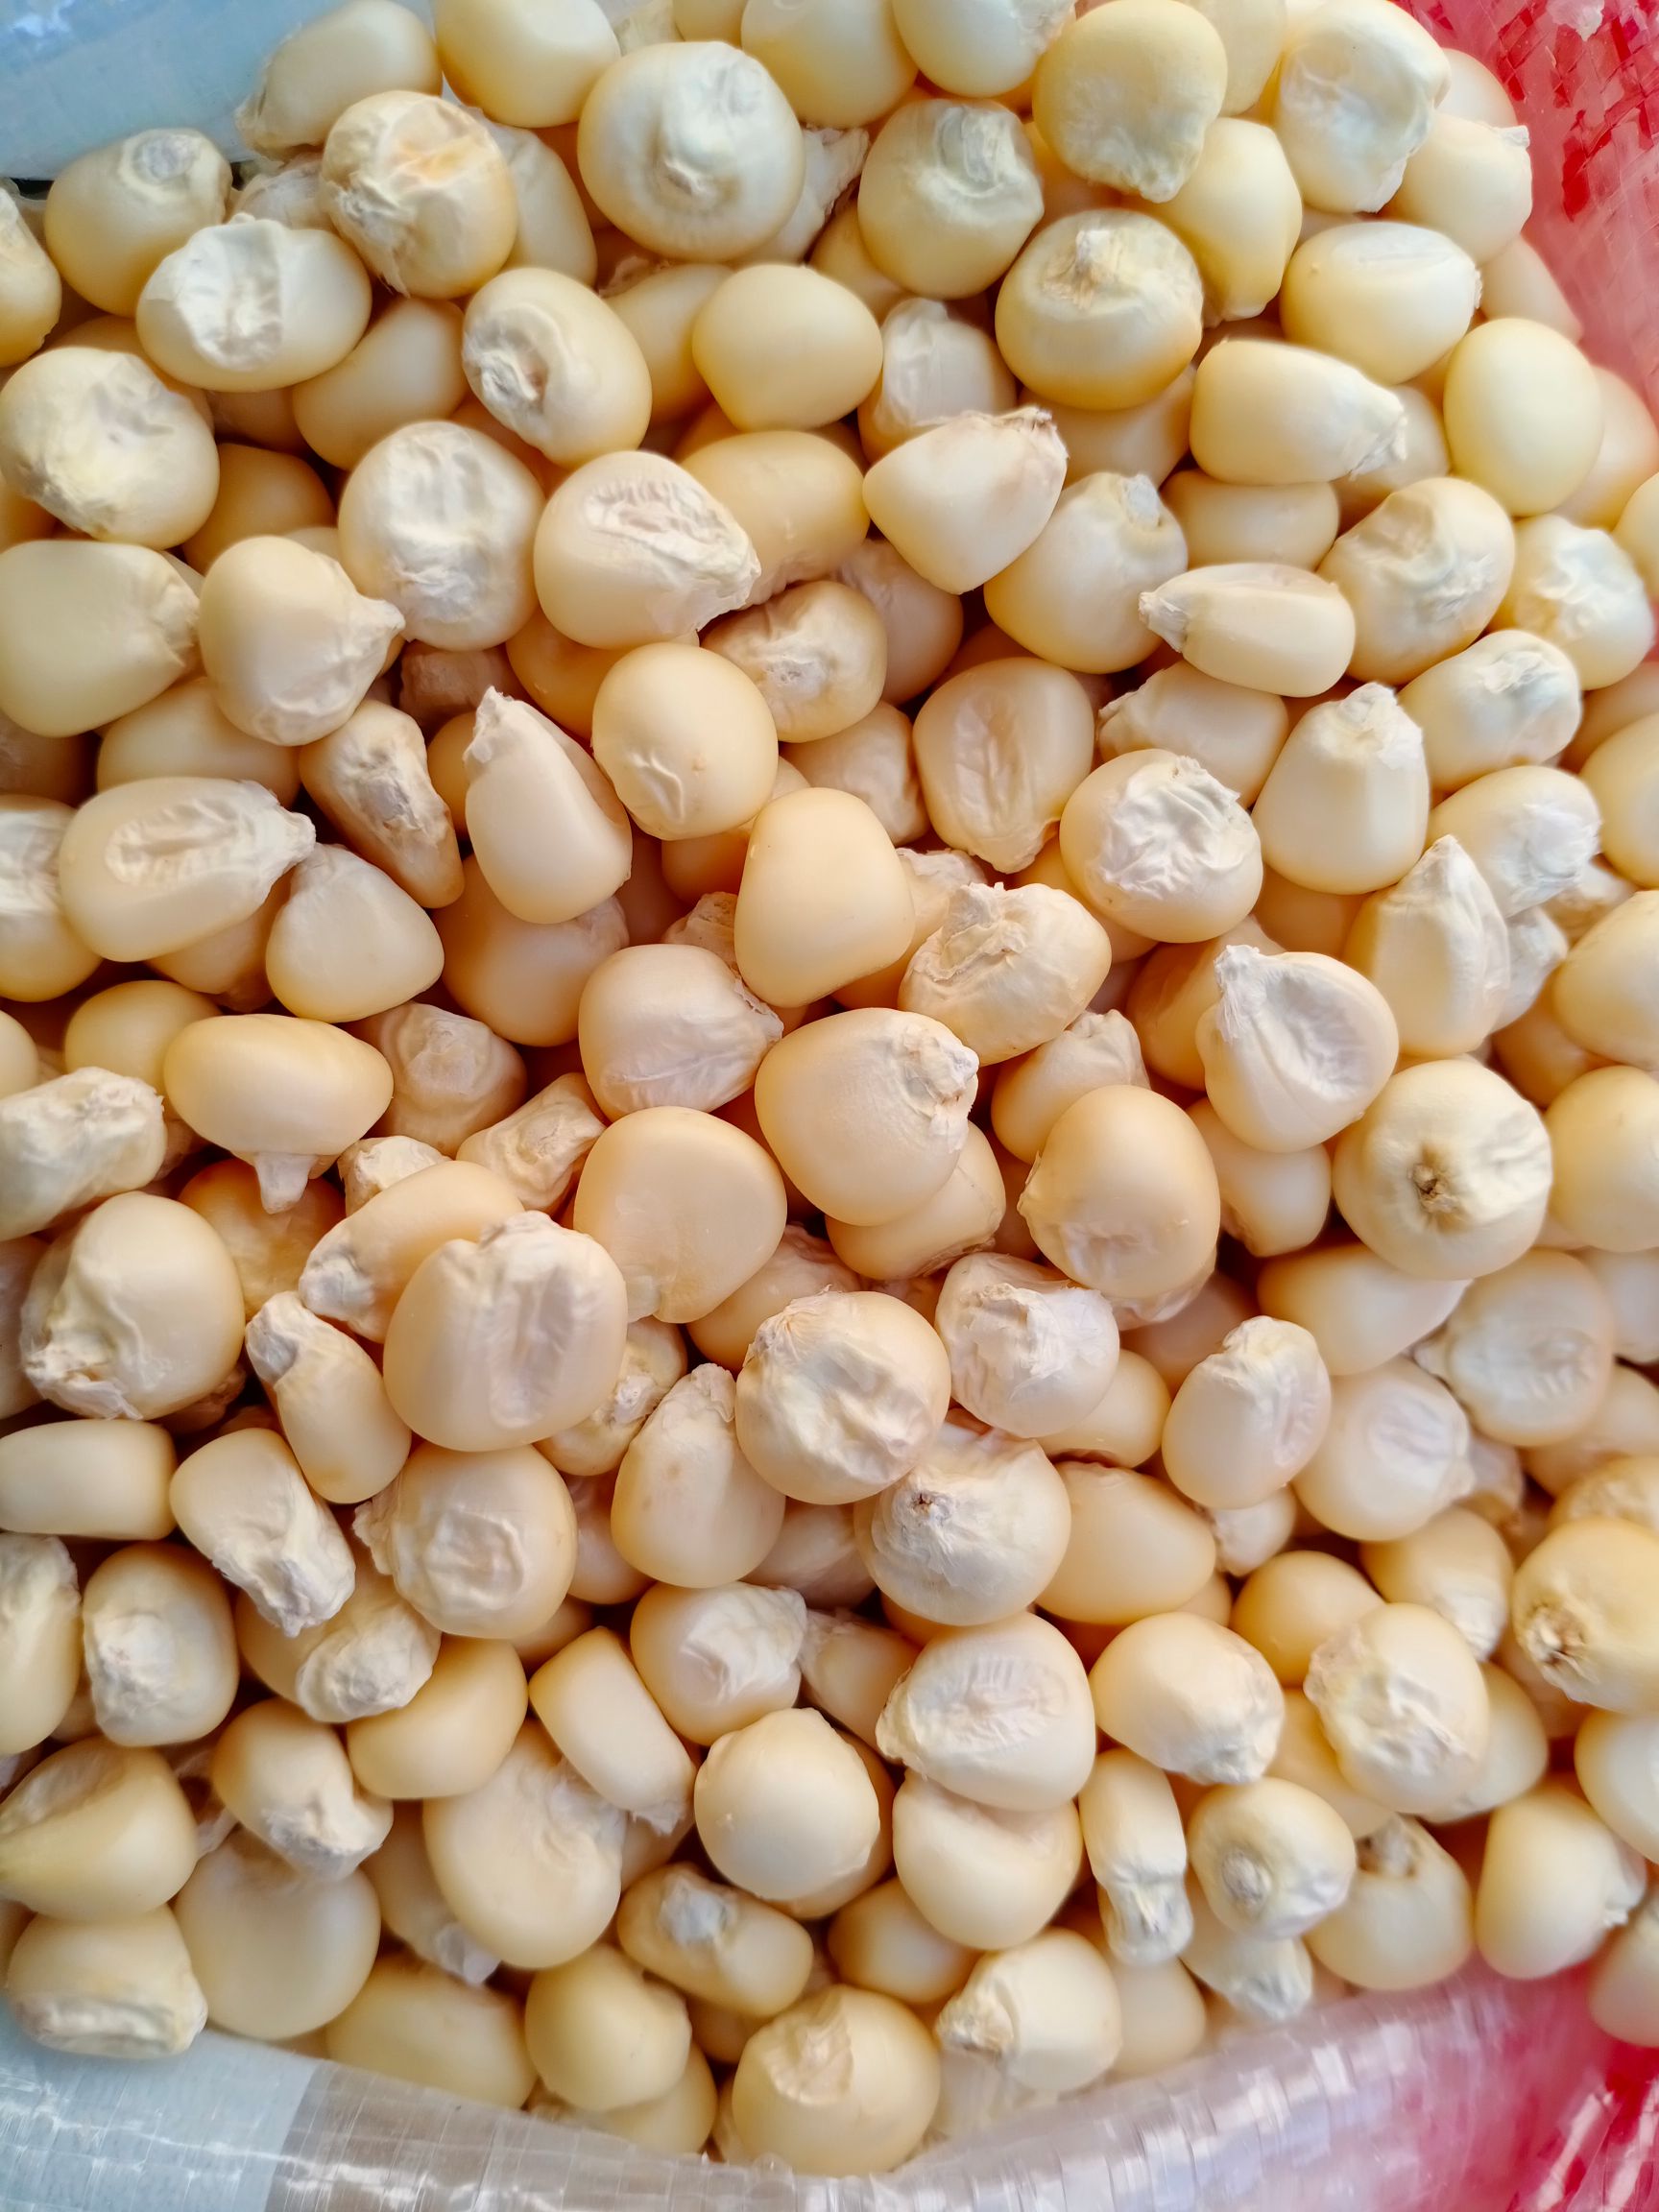 稷秾3玉米种子图片